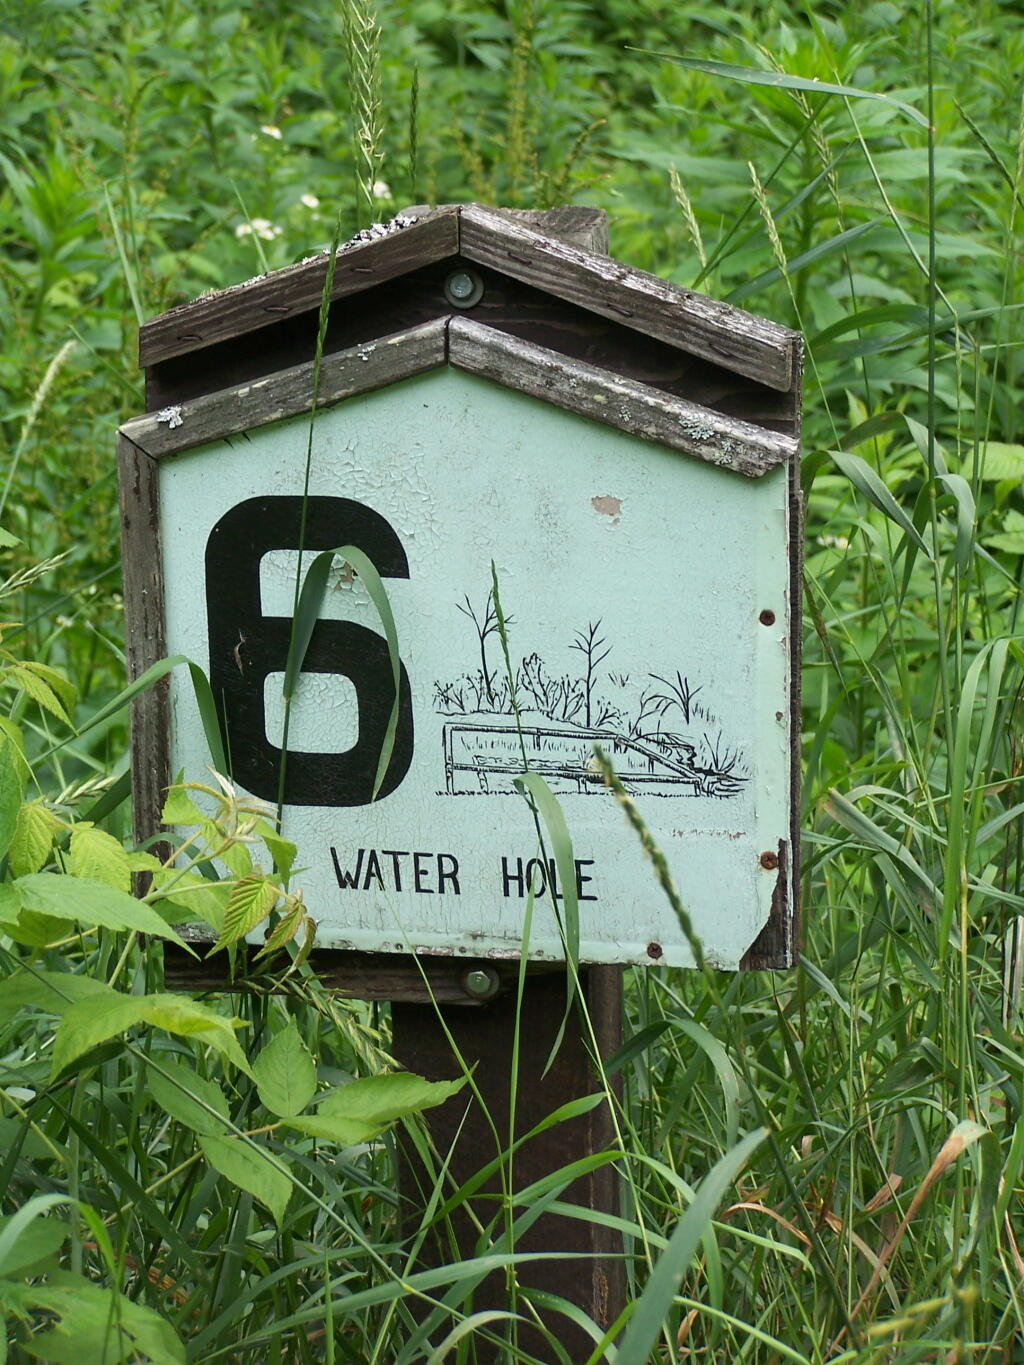 Stop 6: Waterhole